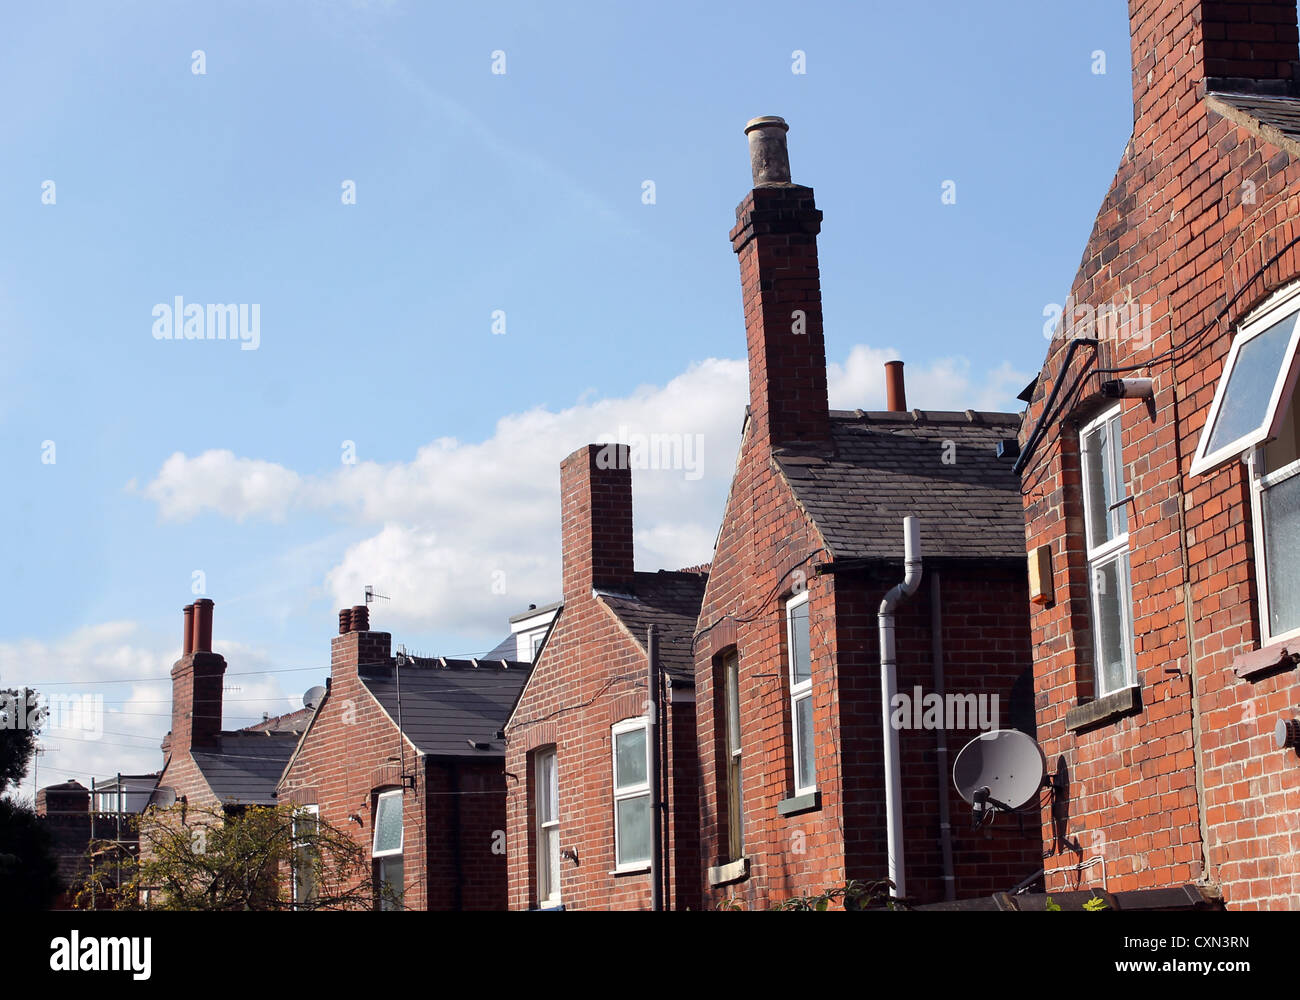 Retour de l'anglais Red Brick Terrasse maisons de village avec fond de ciel bleu et de copier l'espace. Banque D'Images